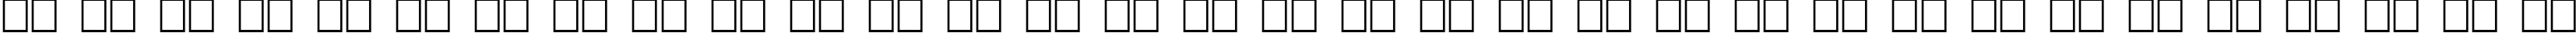 Пример написания русского алфавита шрифтом Hrom